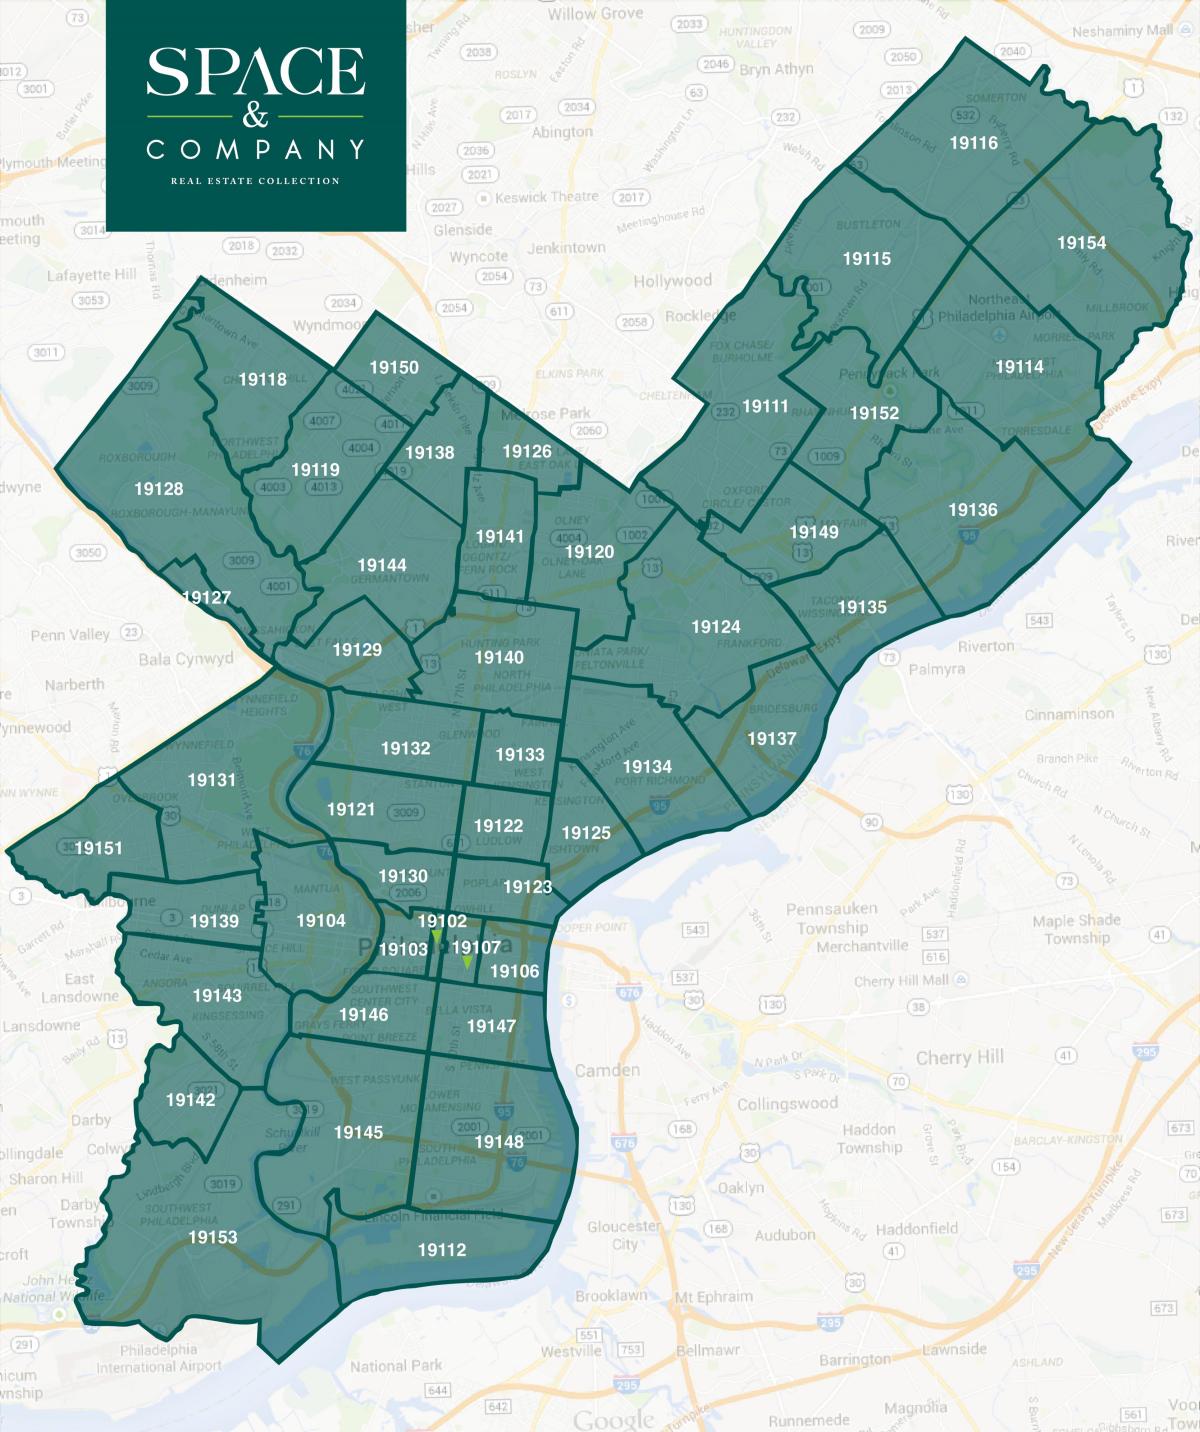 карта окрестностей Филадельфии и zip коды